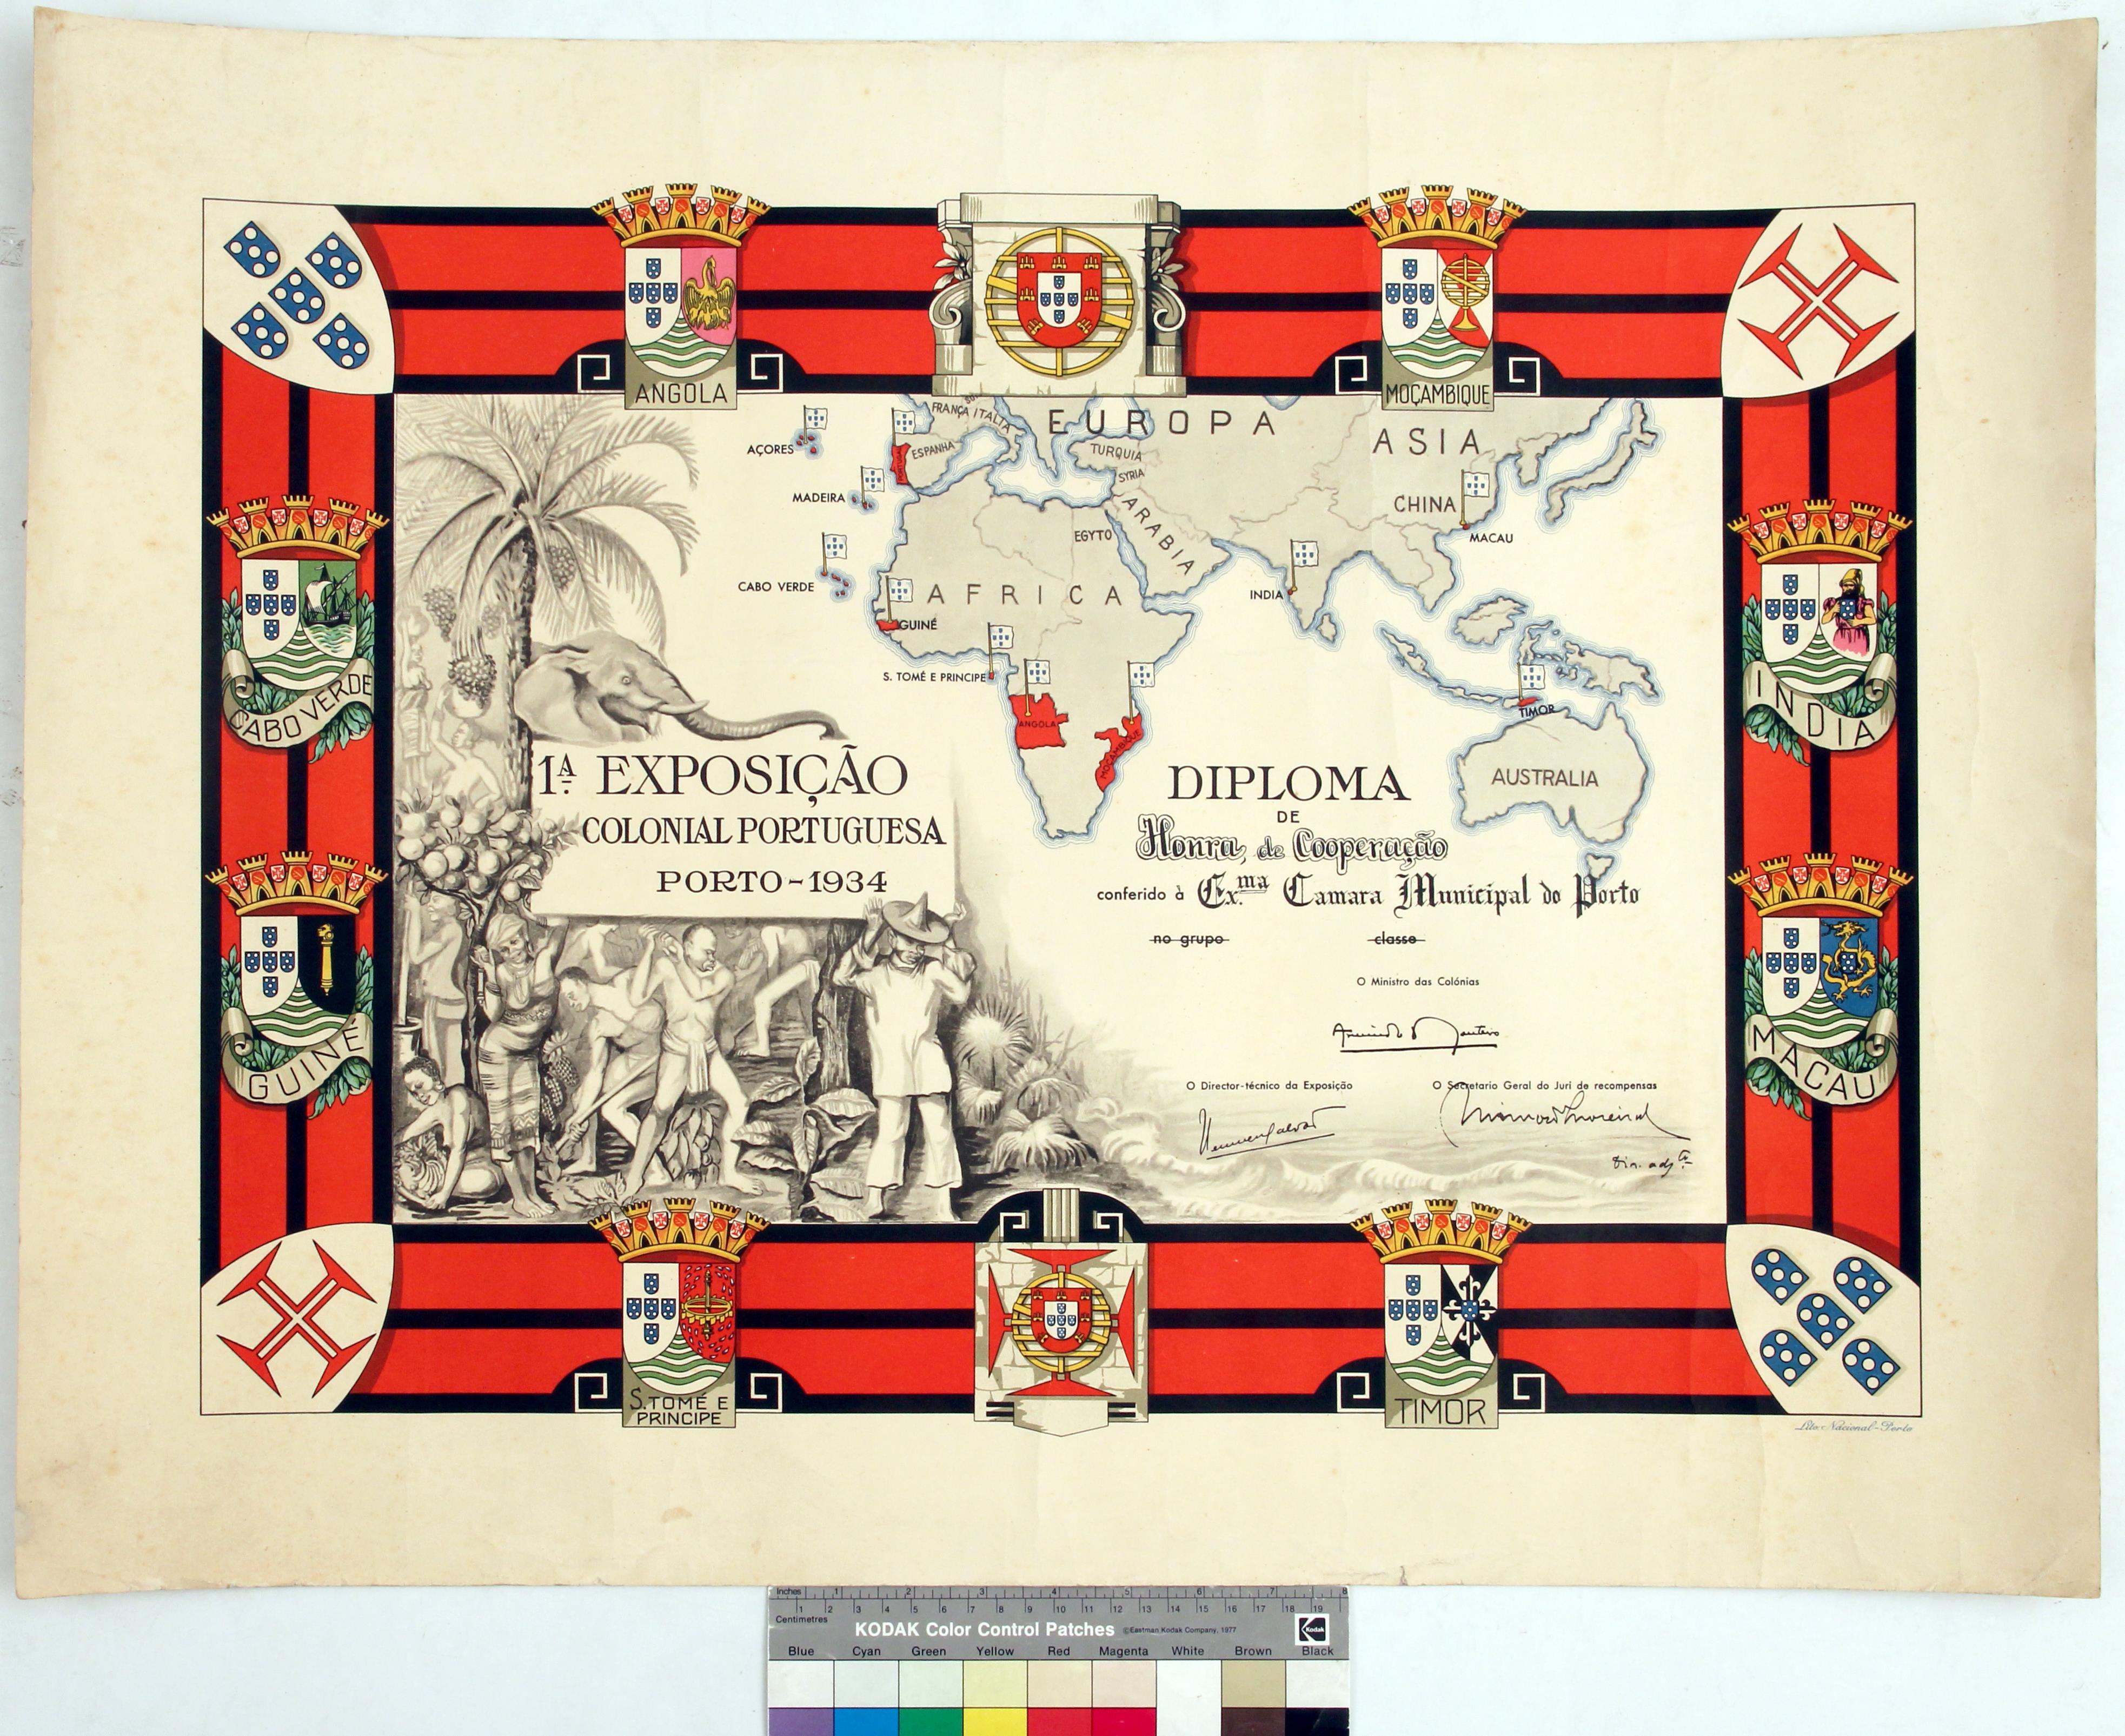 Diploma de honra, cooperação na 1ª Exposição Colonial Portuguesa, conferido à Câmara Municipal do Porto